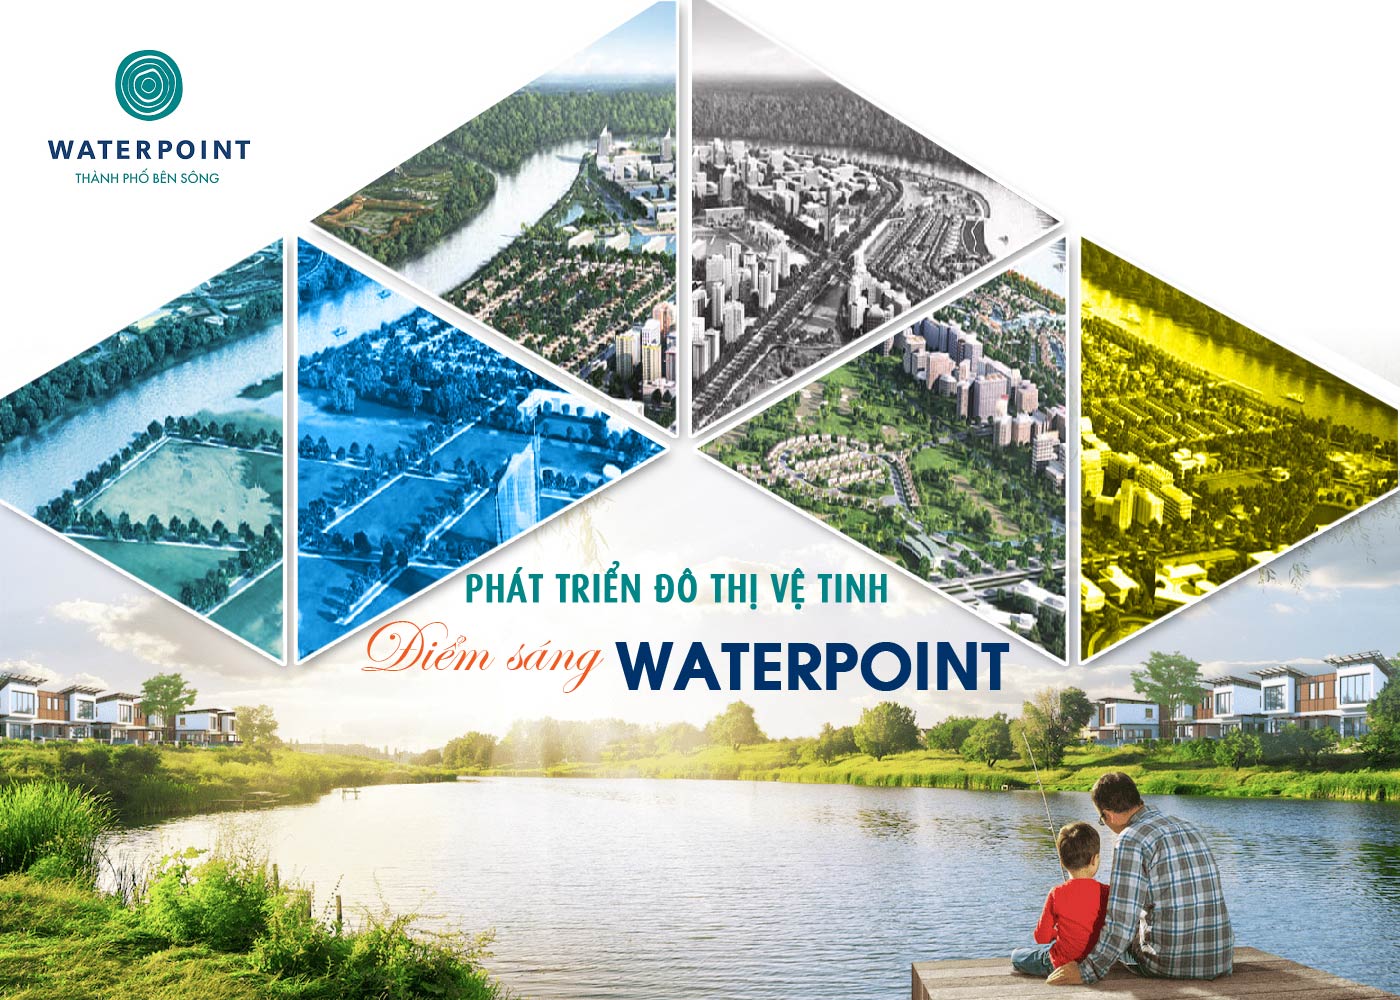 Phát triển đô thị vệ tinh - Điểm sáng Waterpoint - Ảnh 1